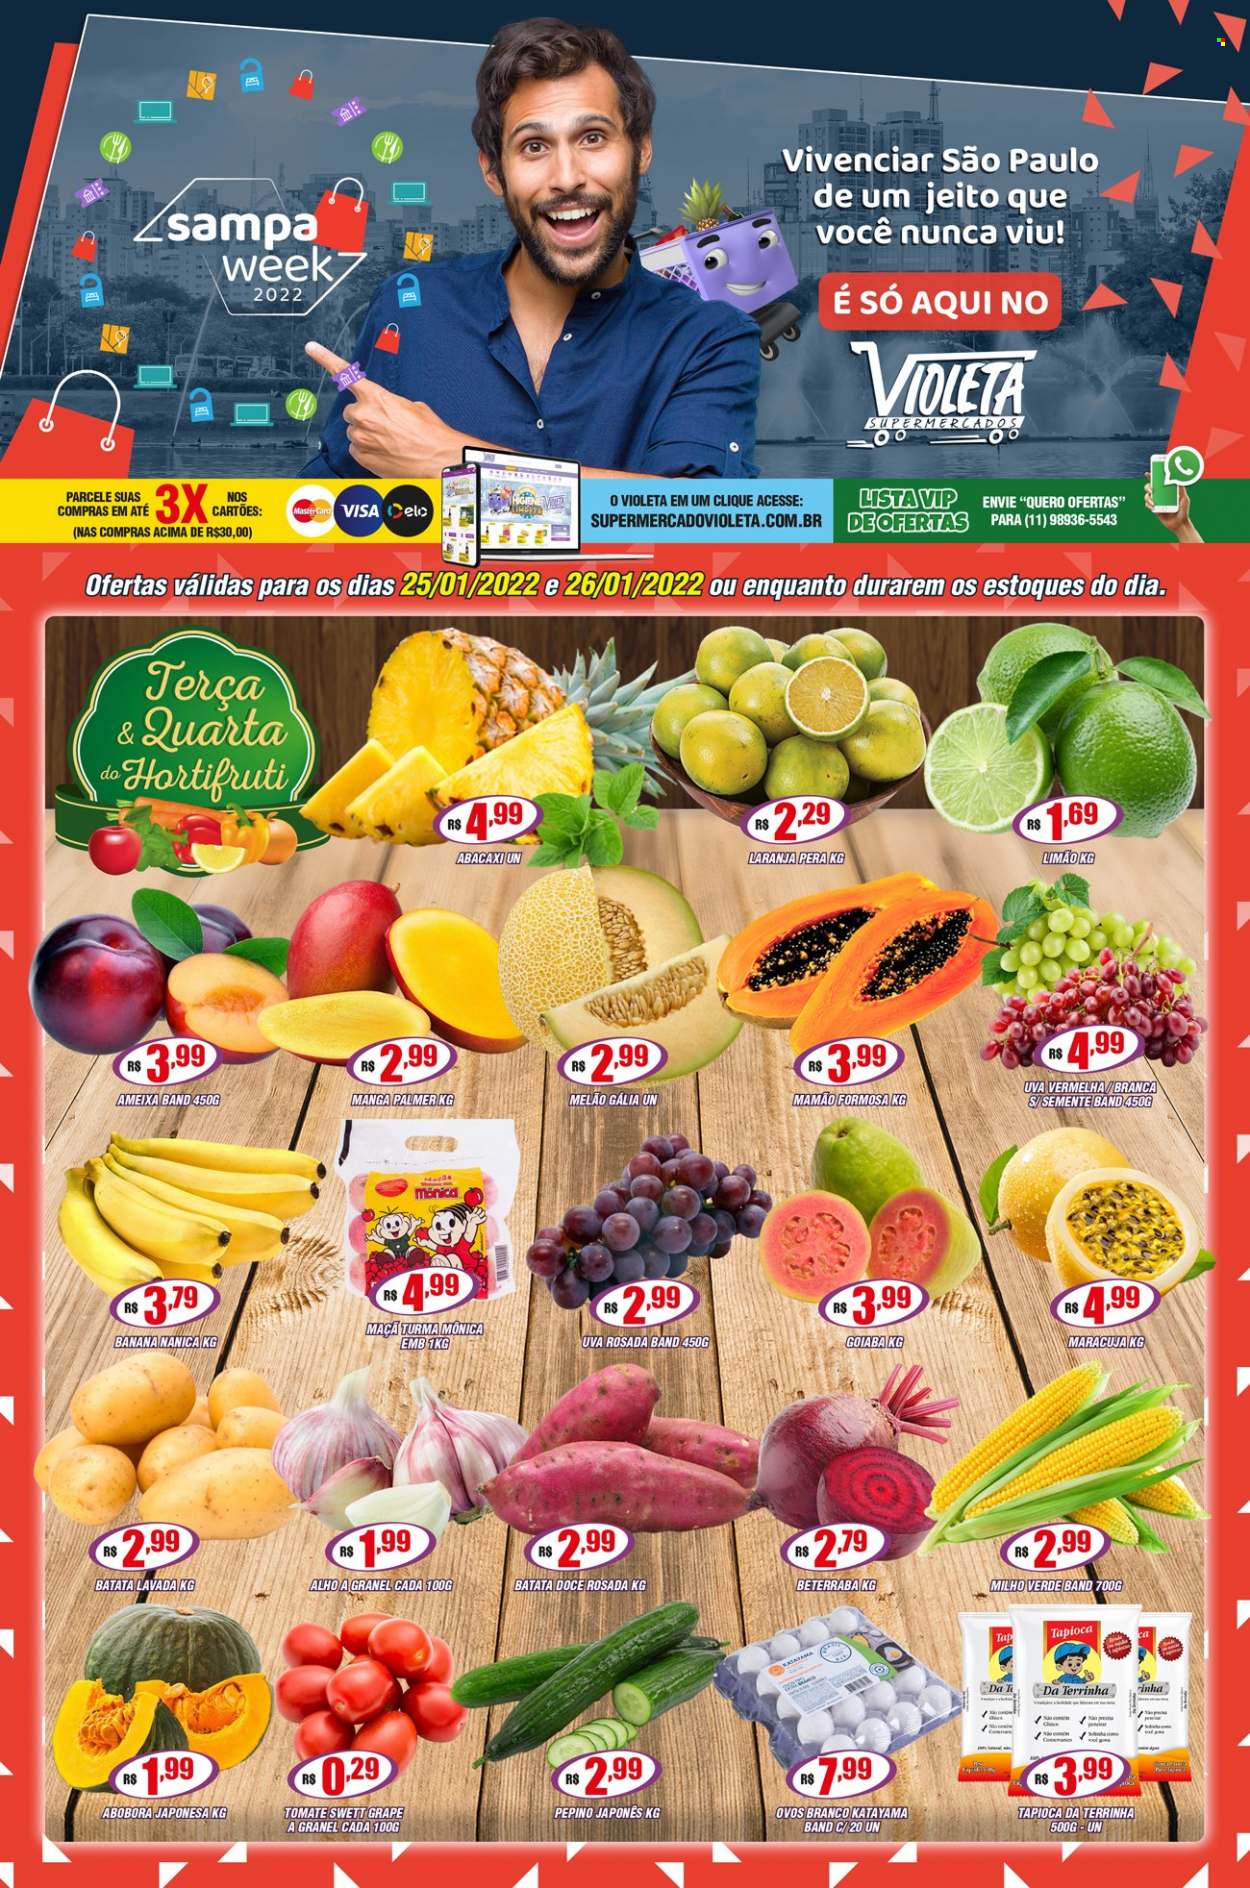 Encarte Supermercado Violeta  - 25.01.2022 - 26.01.2022.